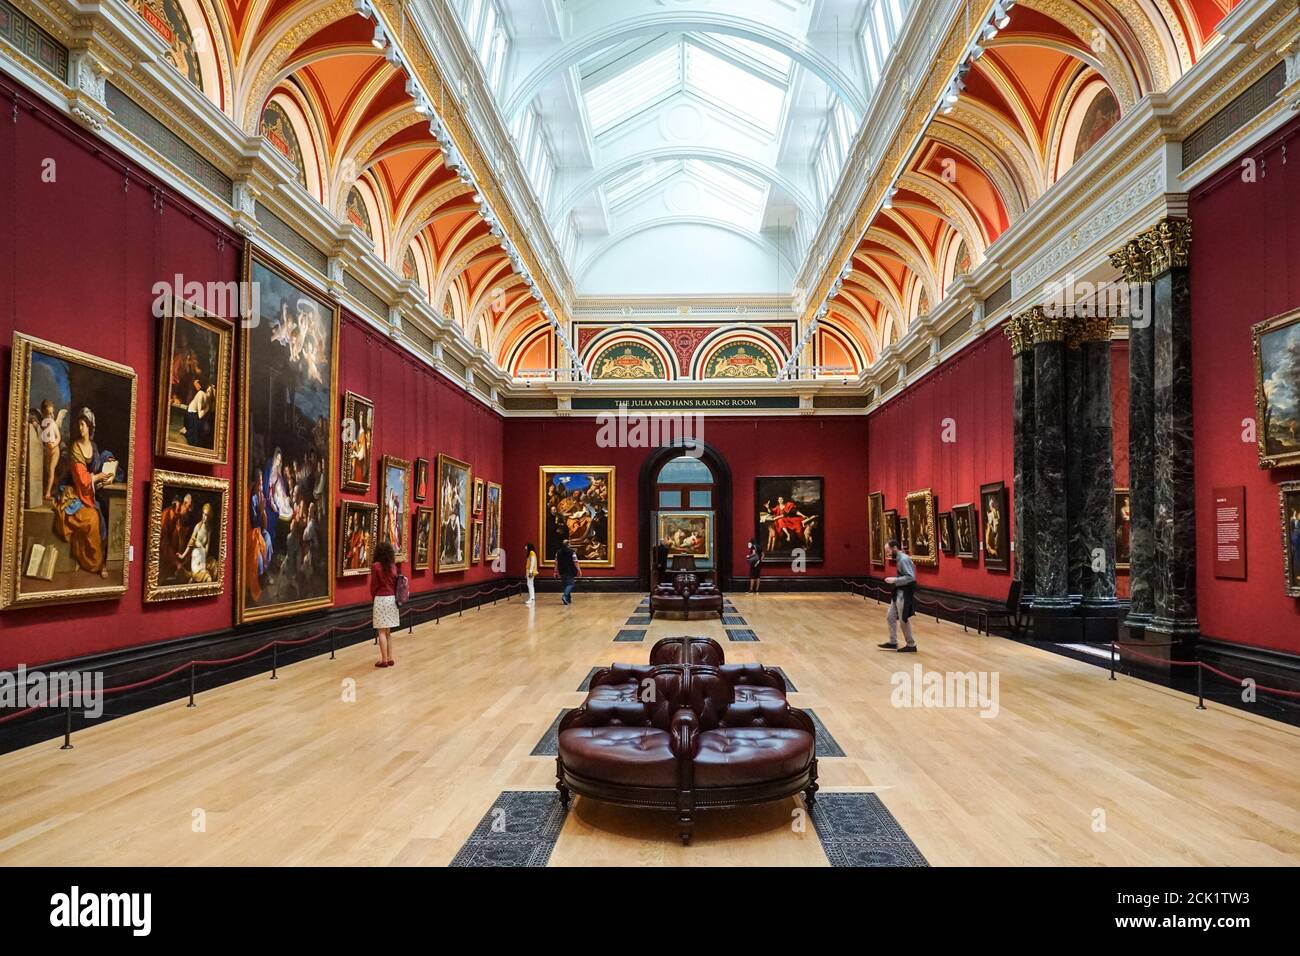 La National Gallery de Londres, Angleterre Royaume-Uni UK Banque D'Images